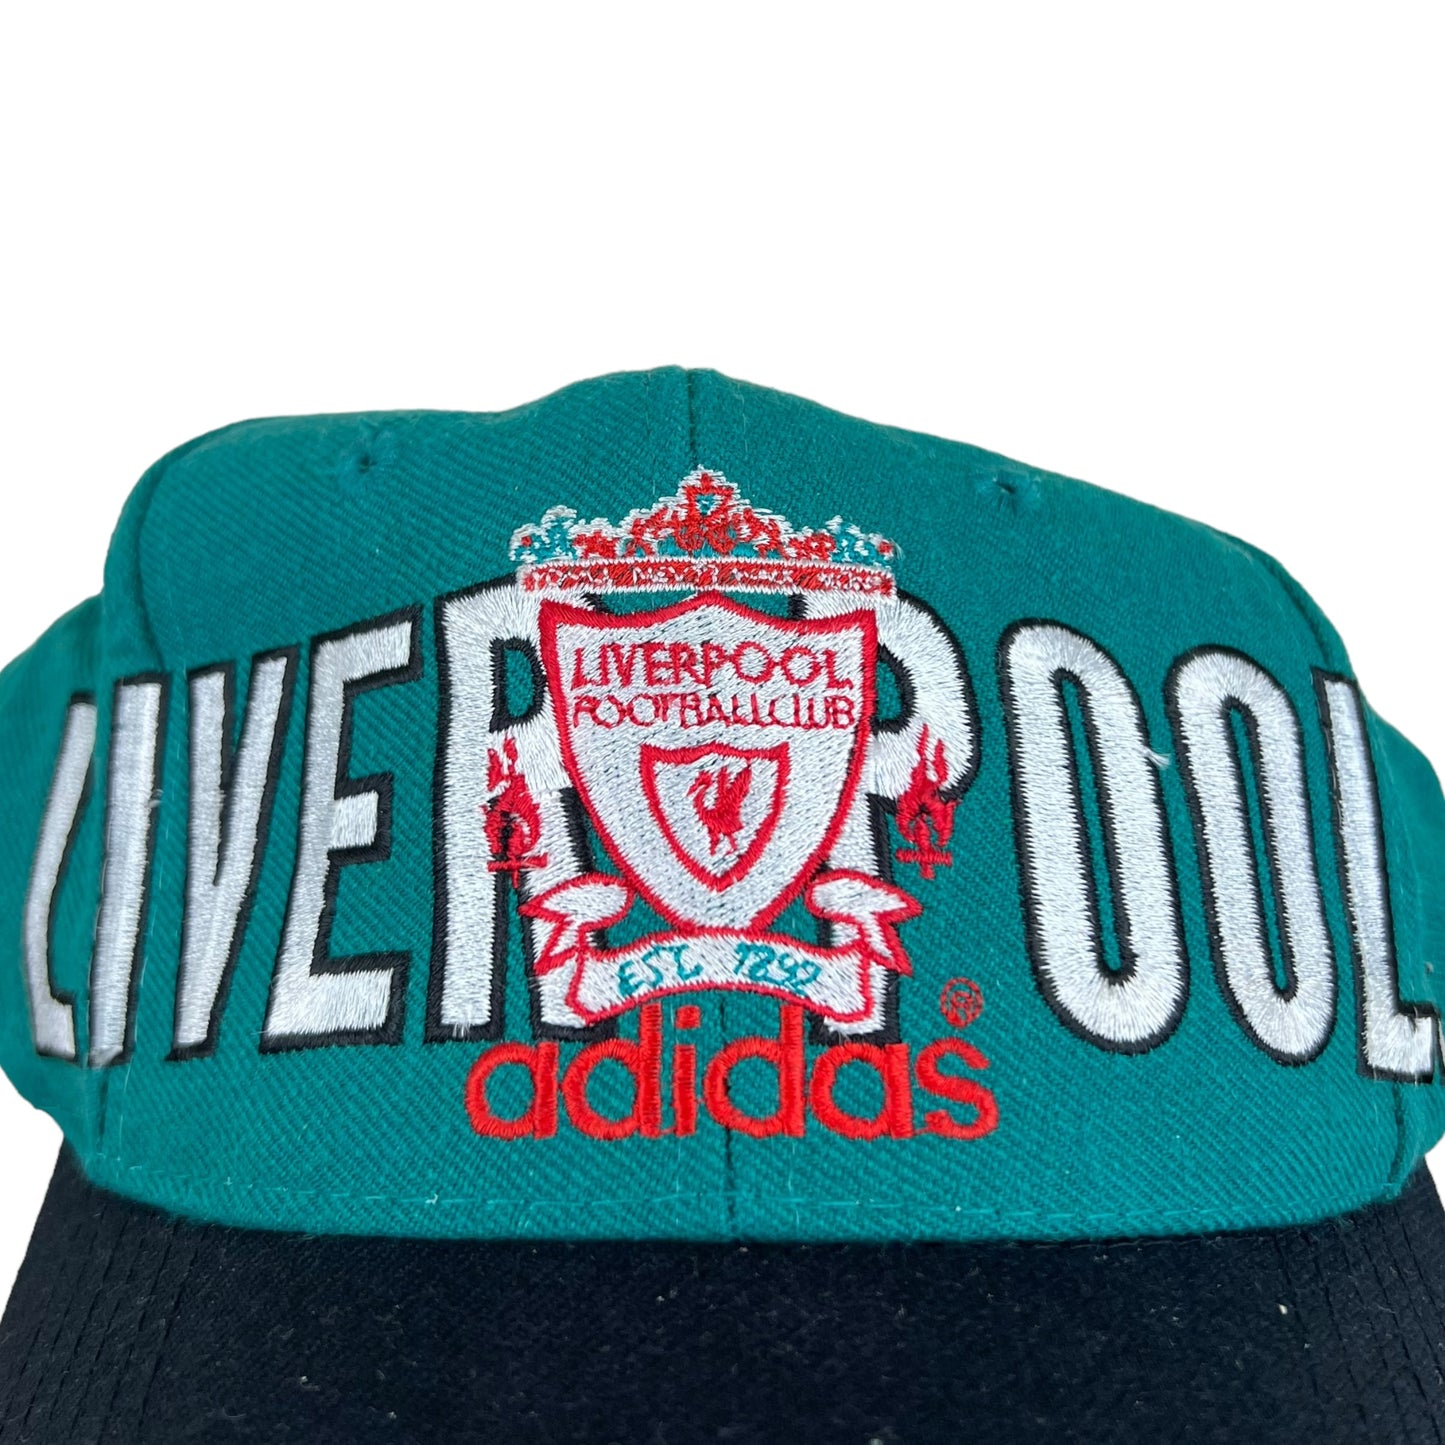 Vintage Adidas Liverpool Football Club Spellout SnapBack Teal